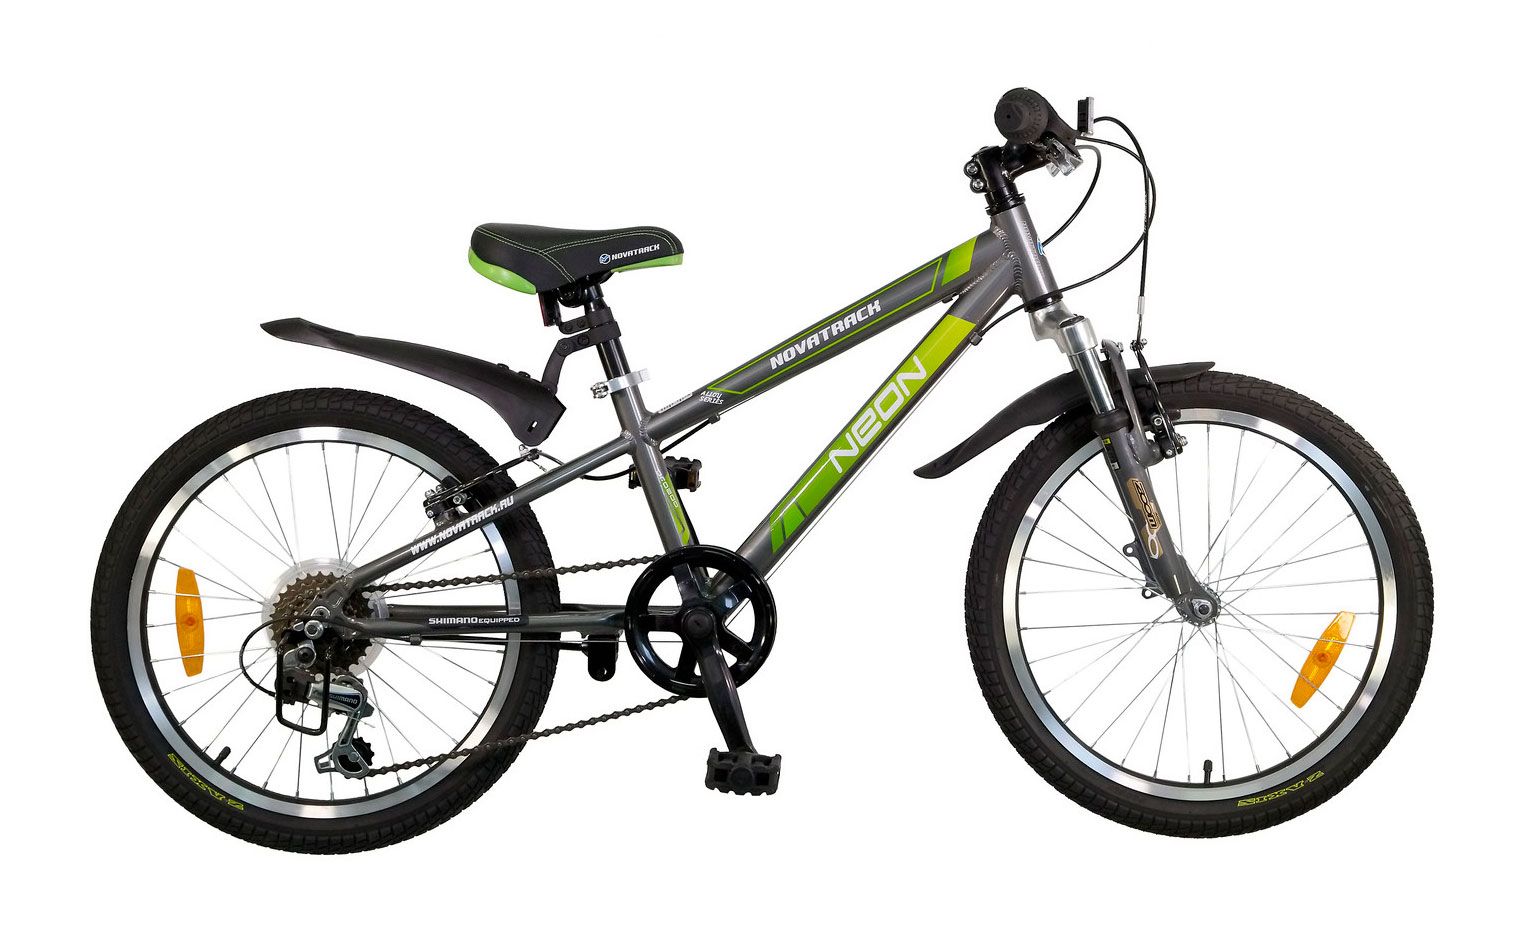  Отзывы о Детском велосипеде Novatrack Neon 20 2015